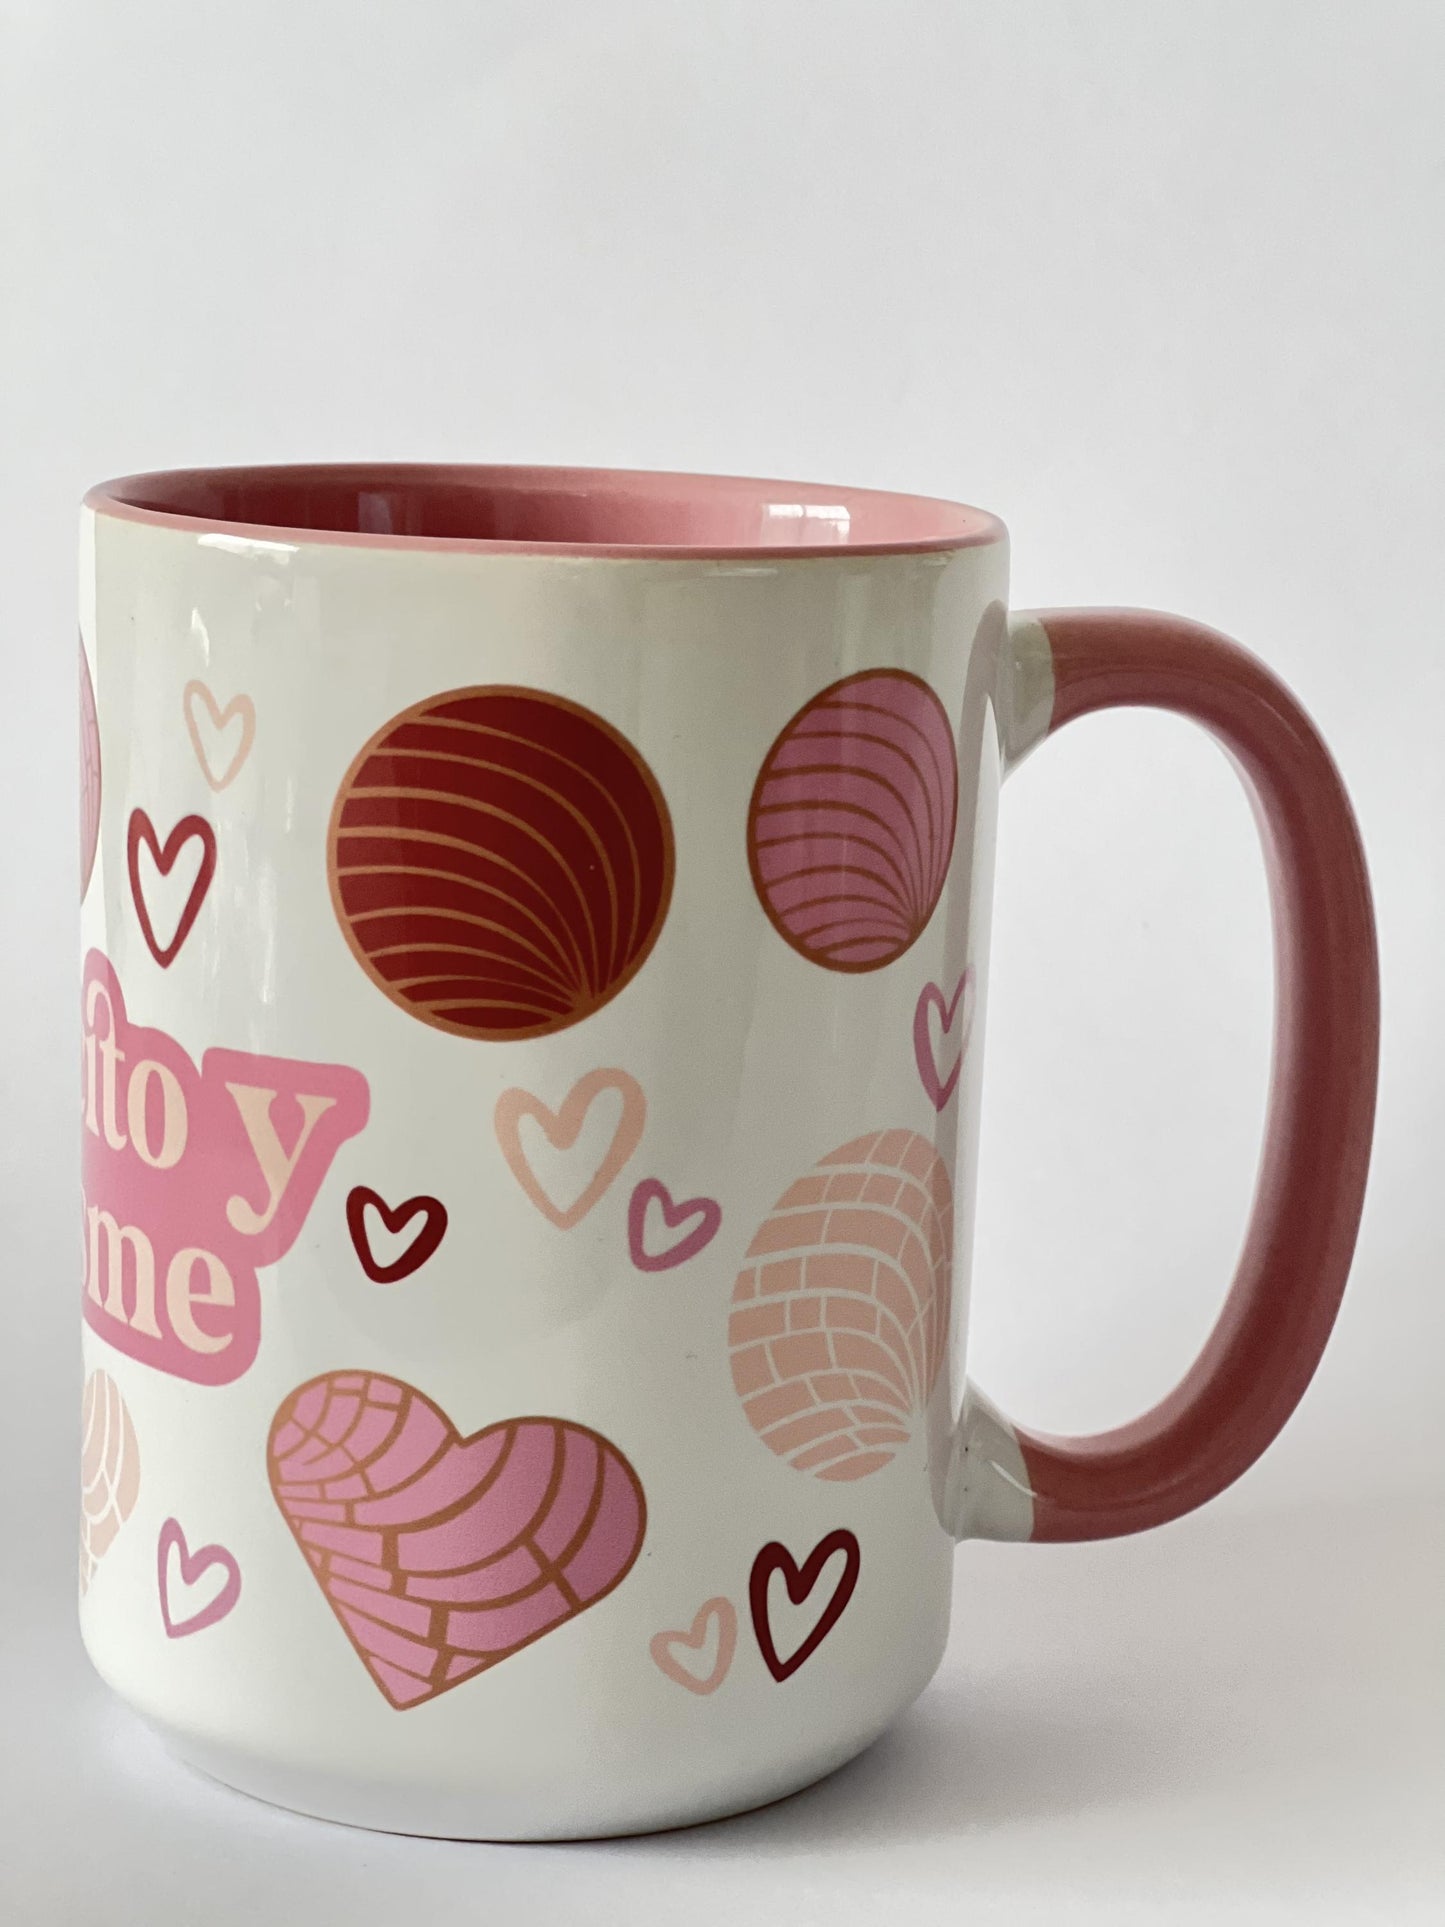 Cafecito y Chisme Coffee Mug - Chisme Coffe Mug